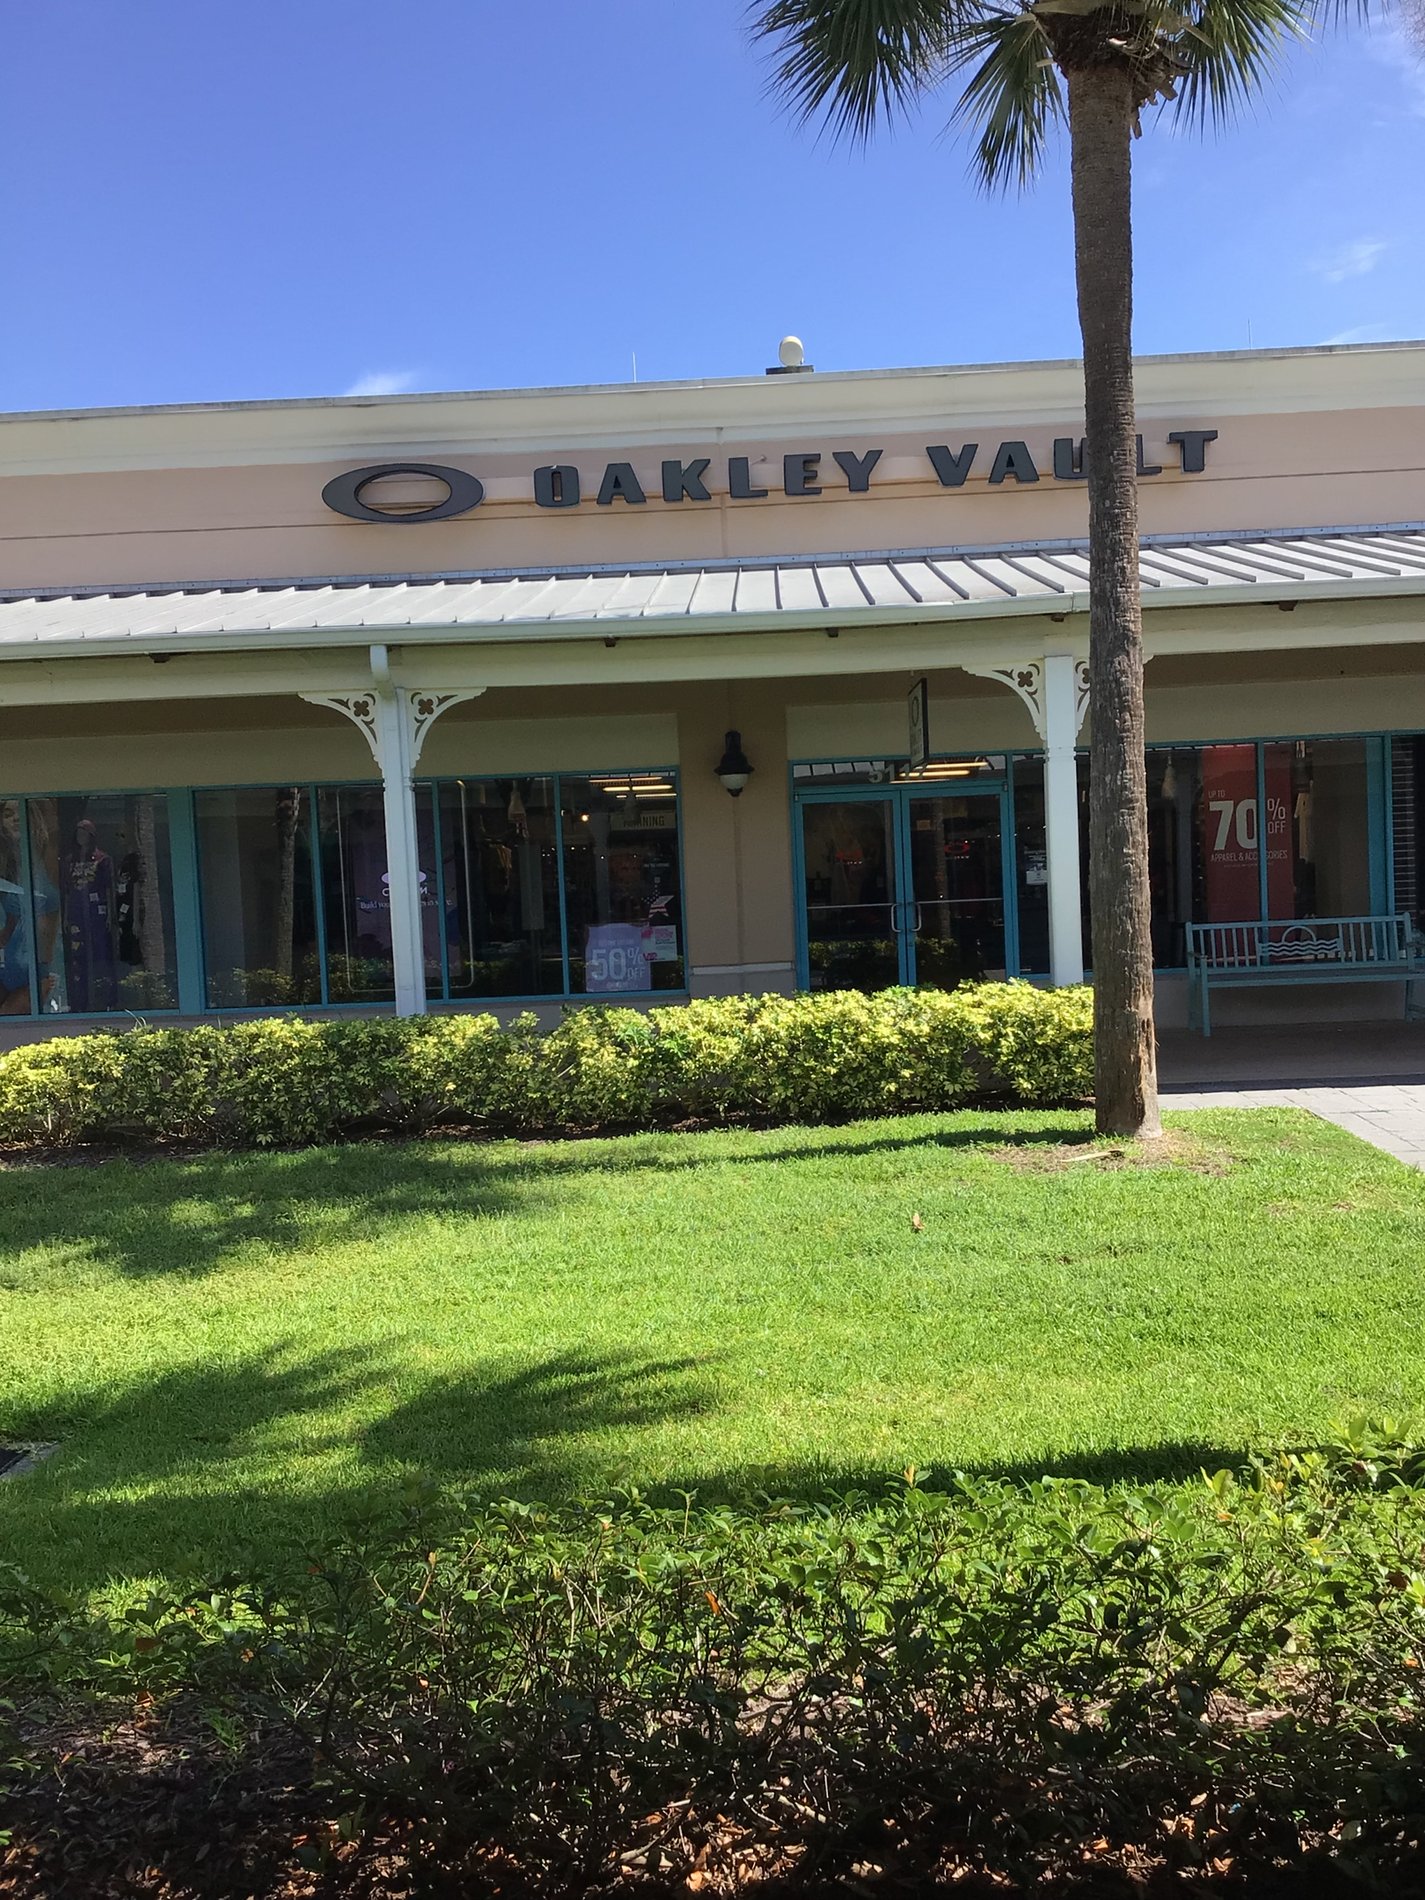 Oakley Vault, 5117 Factory Shops Blvd Ellenton, FL